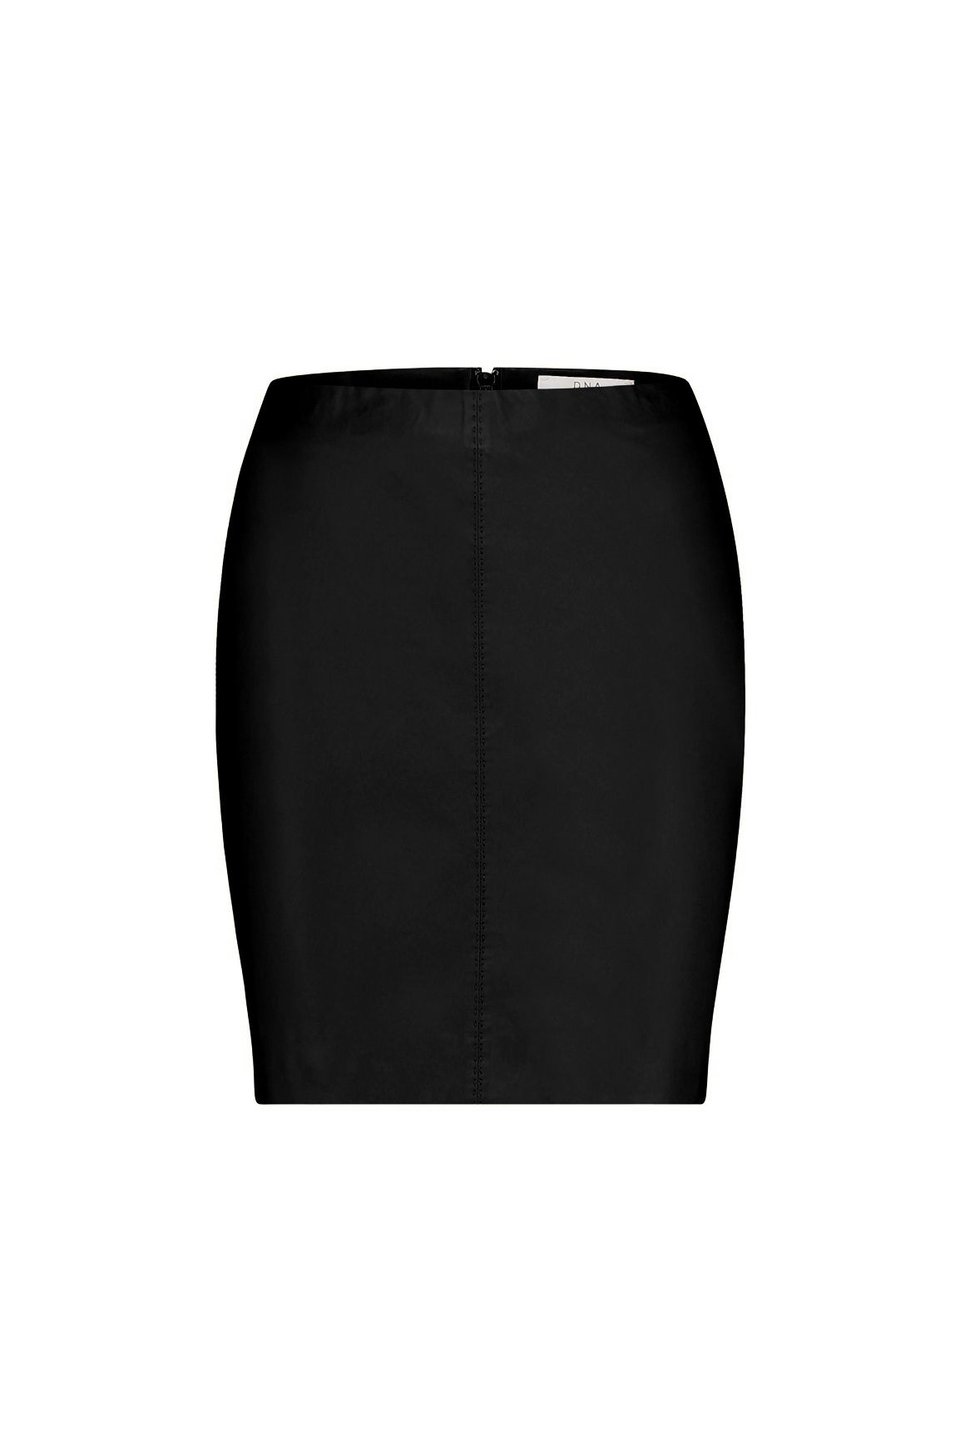 DNA Senna Leather Skirt - Black